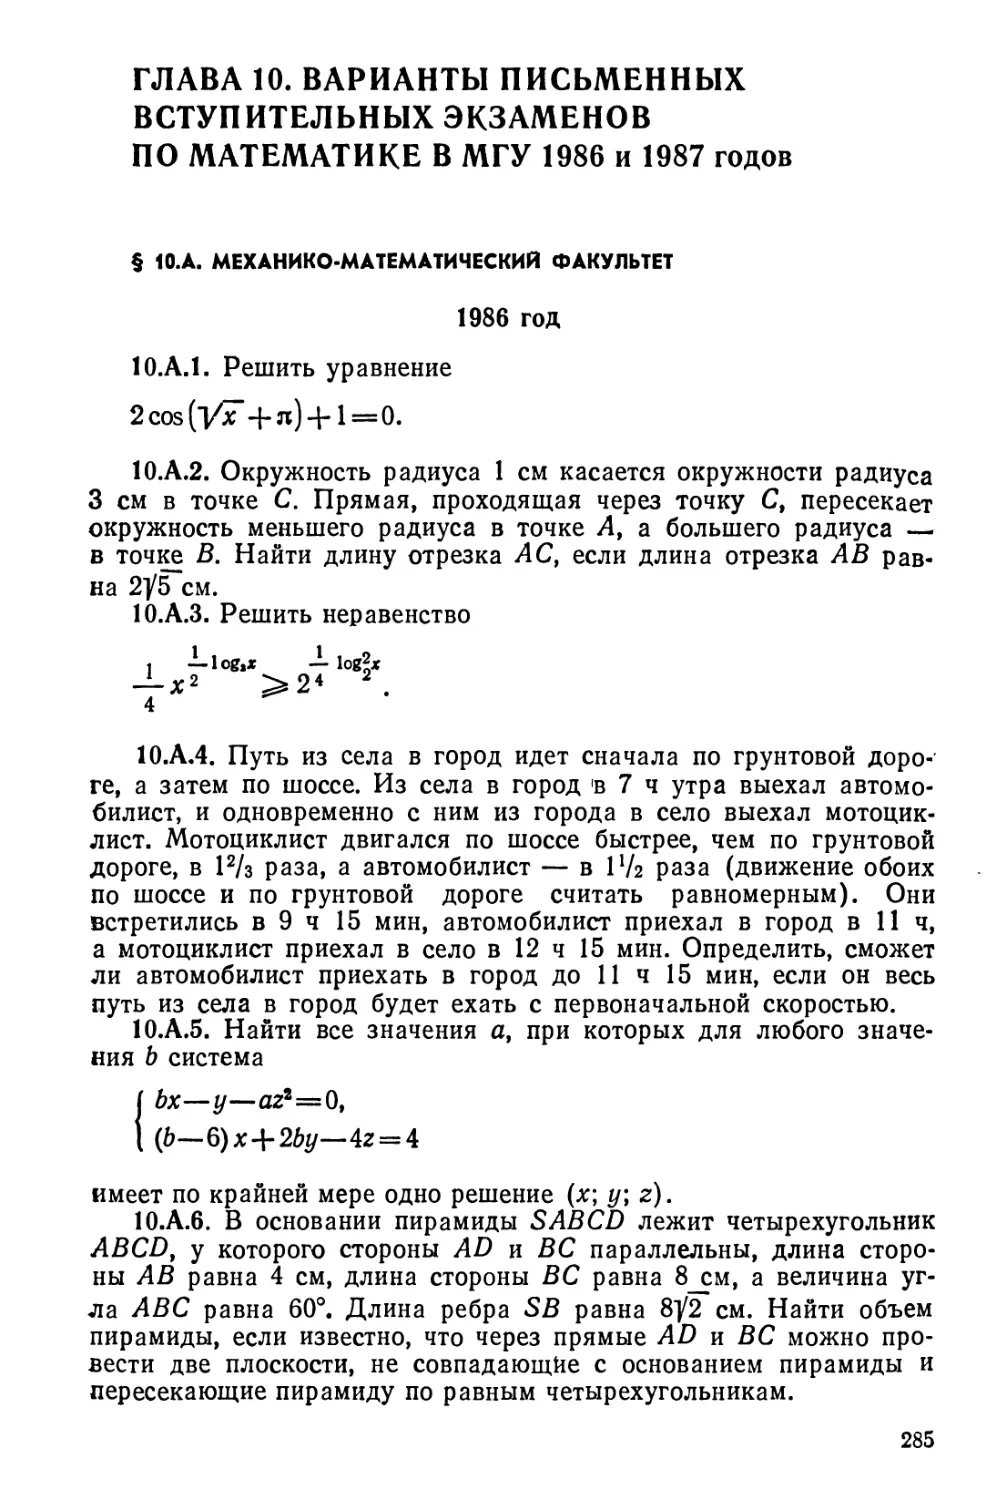 Варианты письменных вступительных экзаменов по математике в МГУ 1986 и 1987 годов